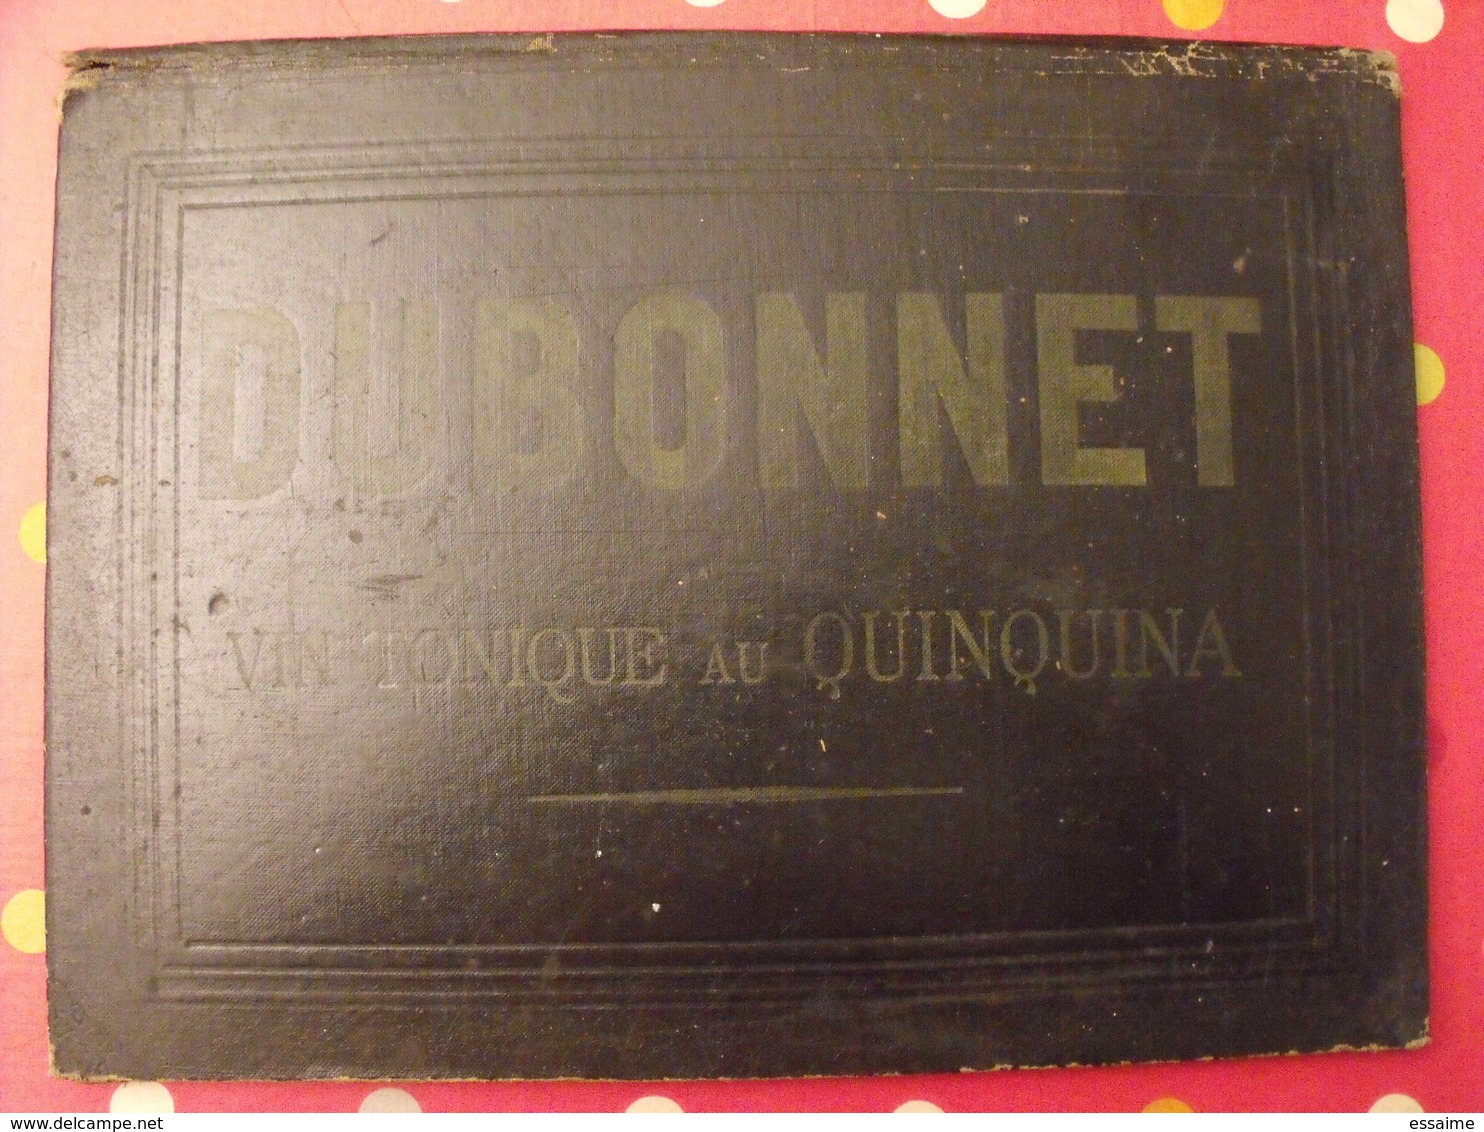 Sous-main Dubonnet, Vin Tonique Au Quiquina. Apéritif. Champagne Morlant Reims. Illustrateur : J Stall. Vers 1930 - Placas De Cartón